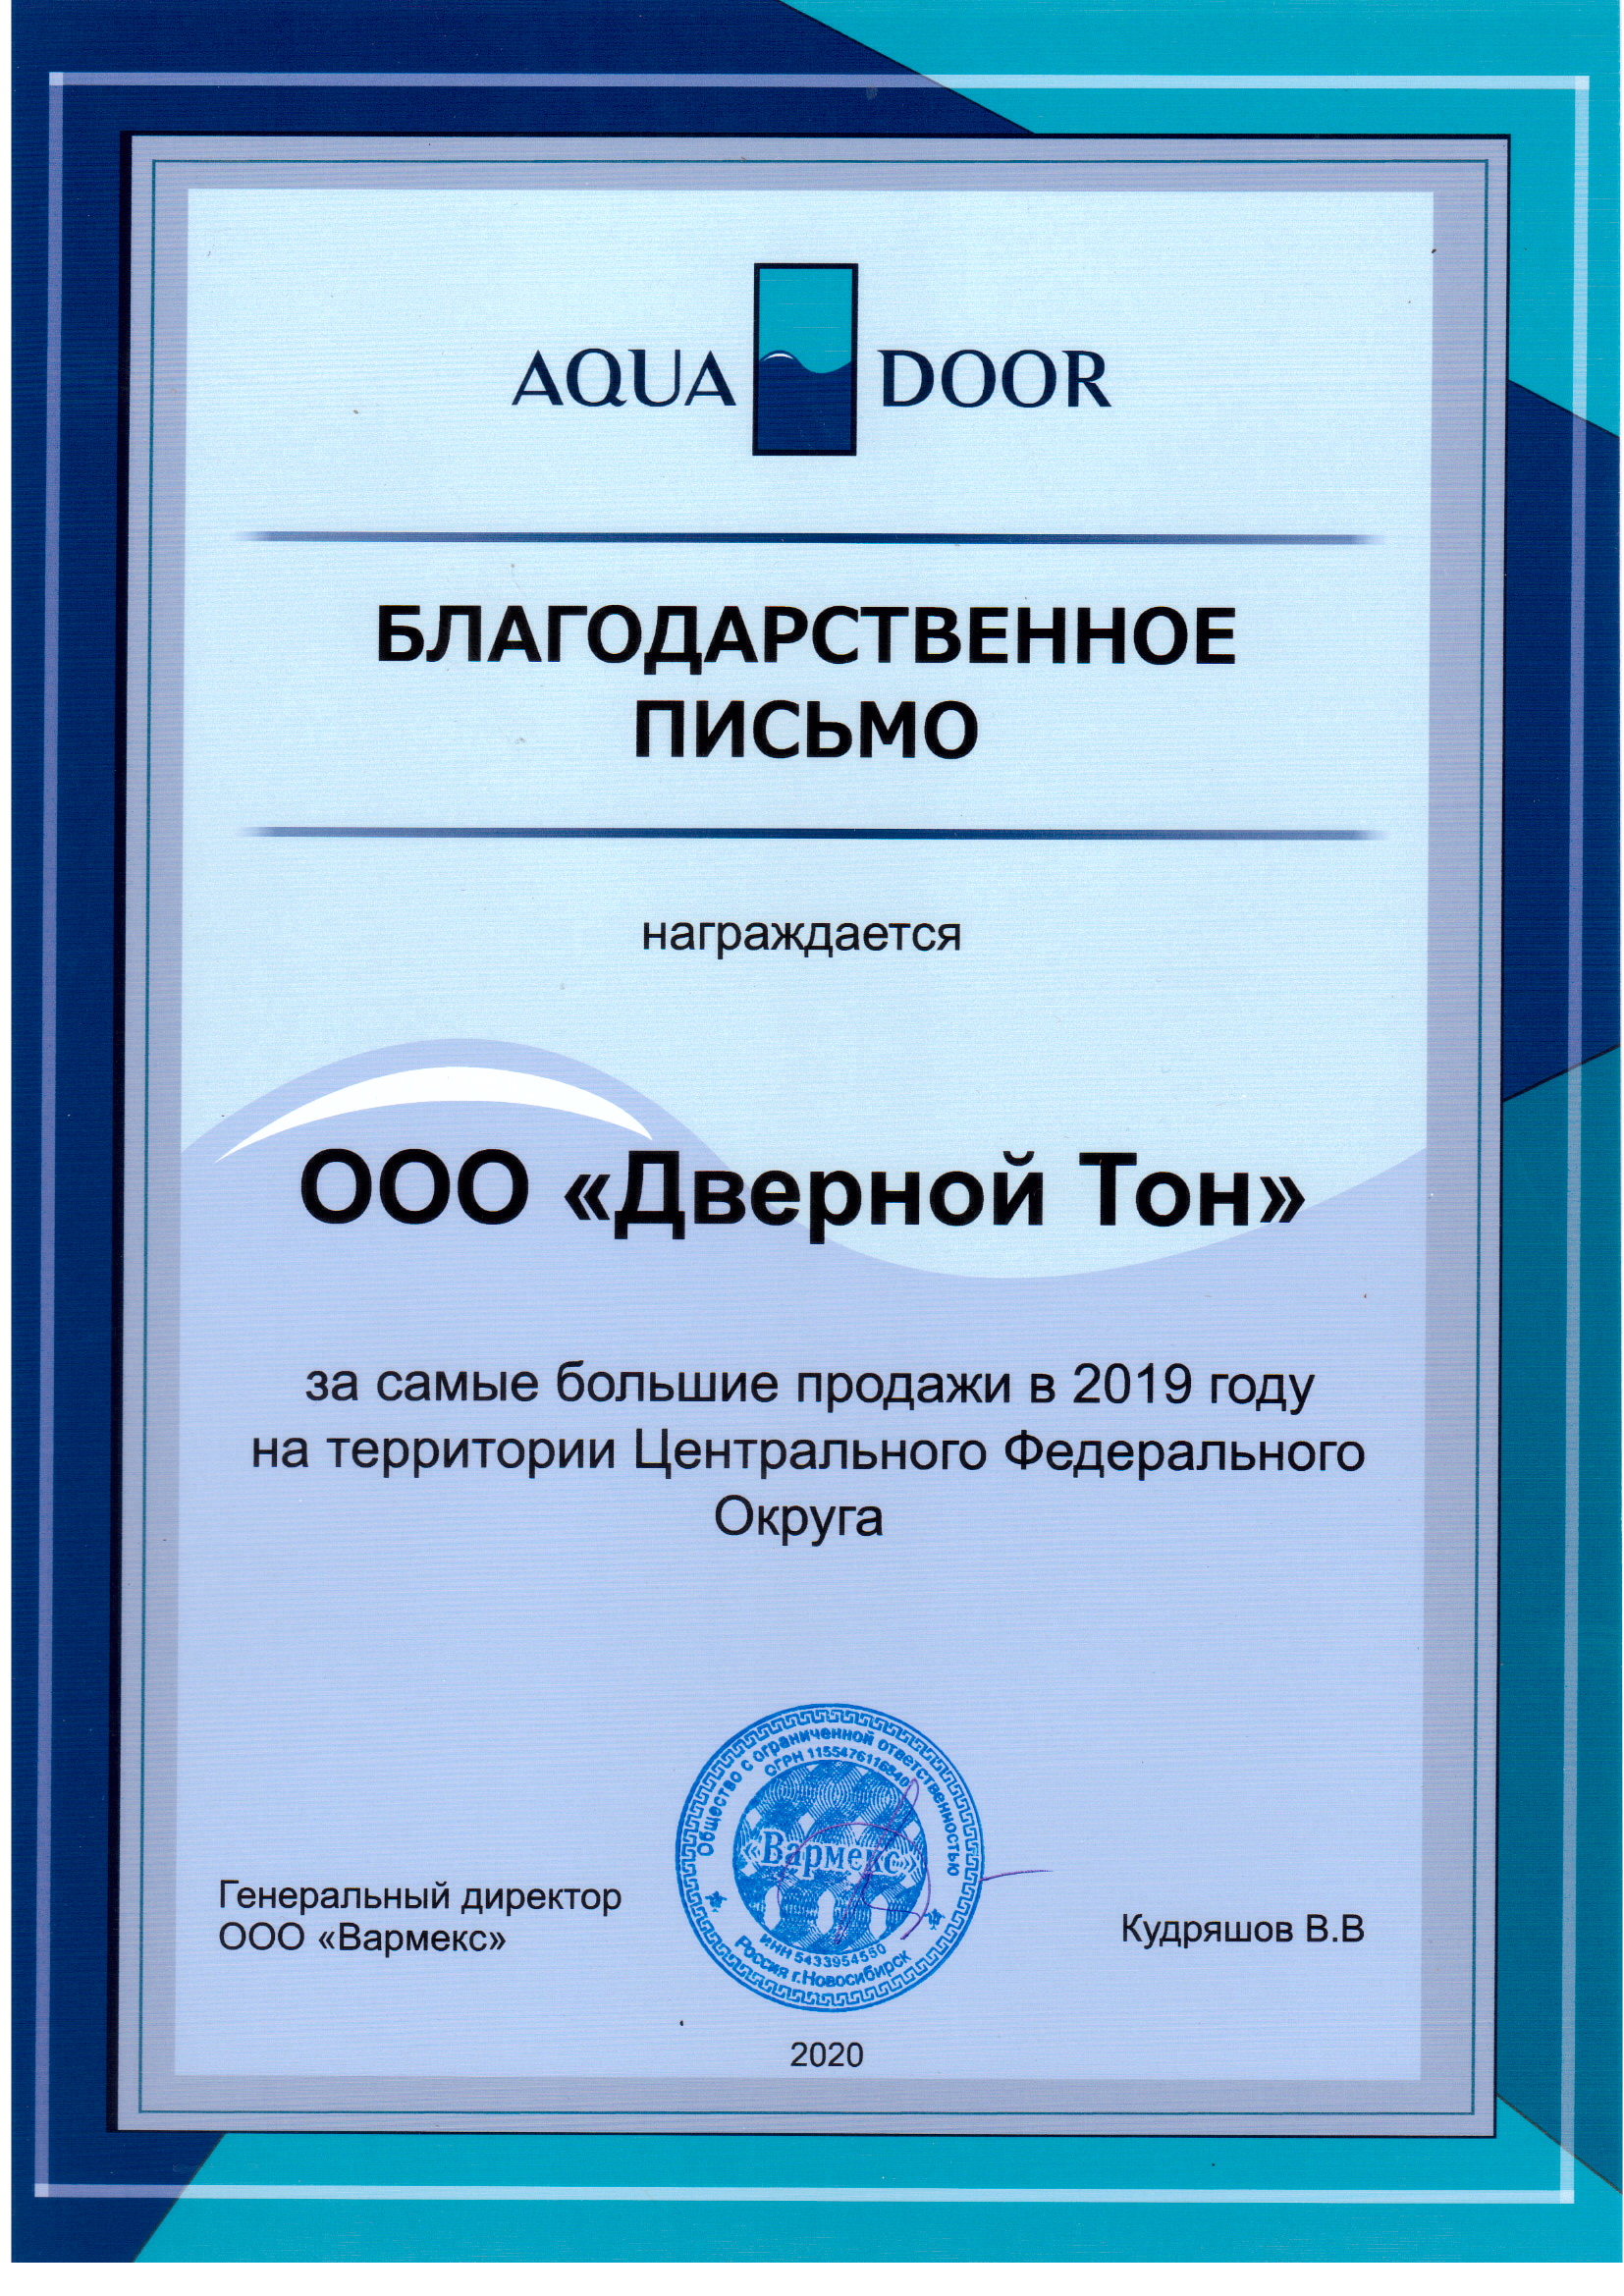 Компания Дверной Тон награждается за лучшие продажи композитных дверей Aquadoor в 2019 году